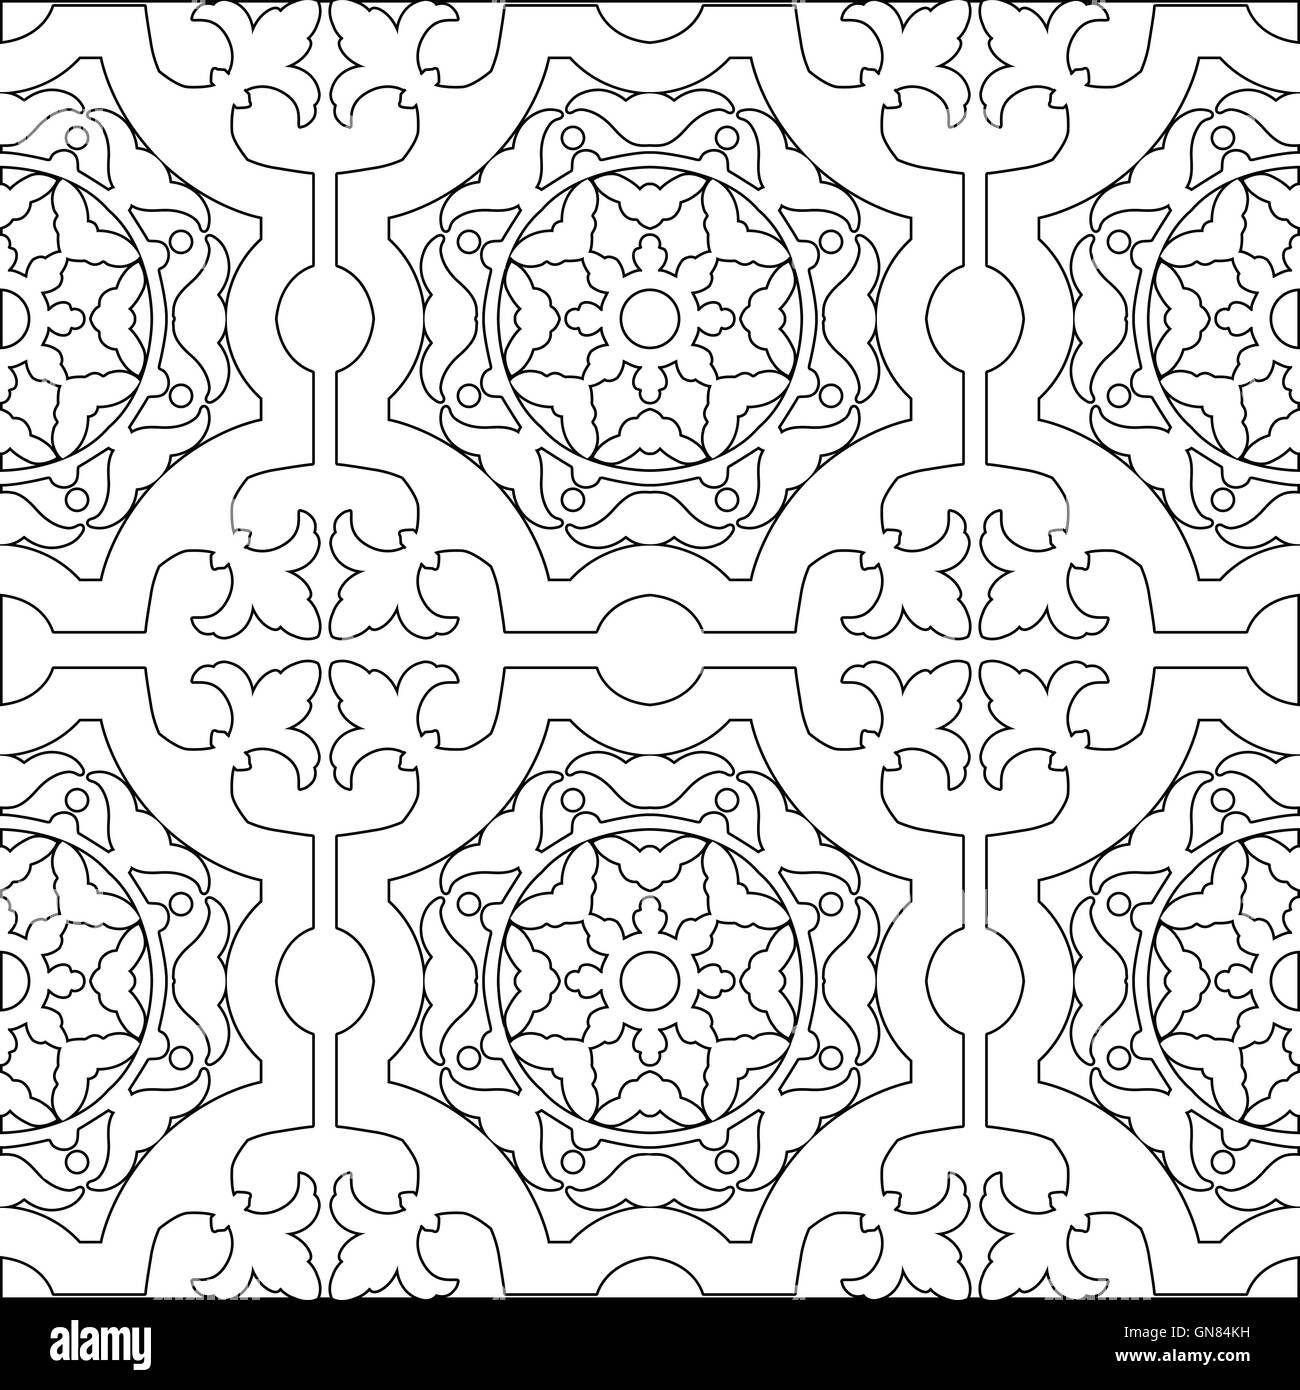 Unique pages. Марокканский узор плитка для раскрашивания. Орнамент в квадрате раскраска. Кафель раскраска. Раскрасить плитку своими руками.